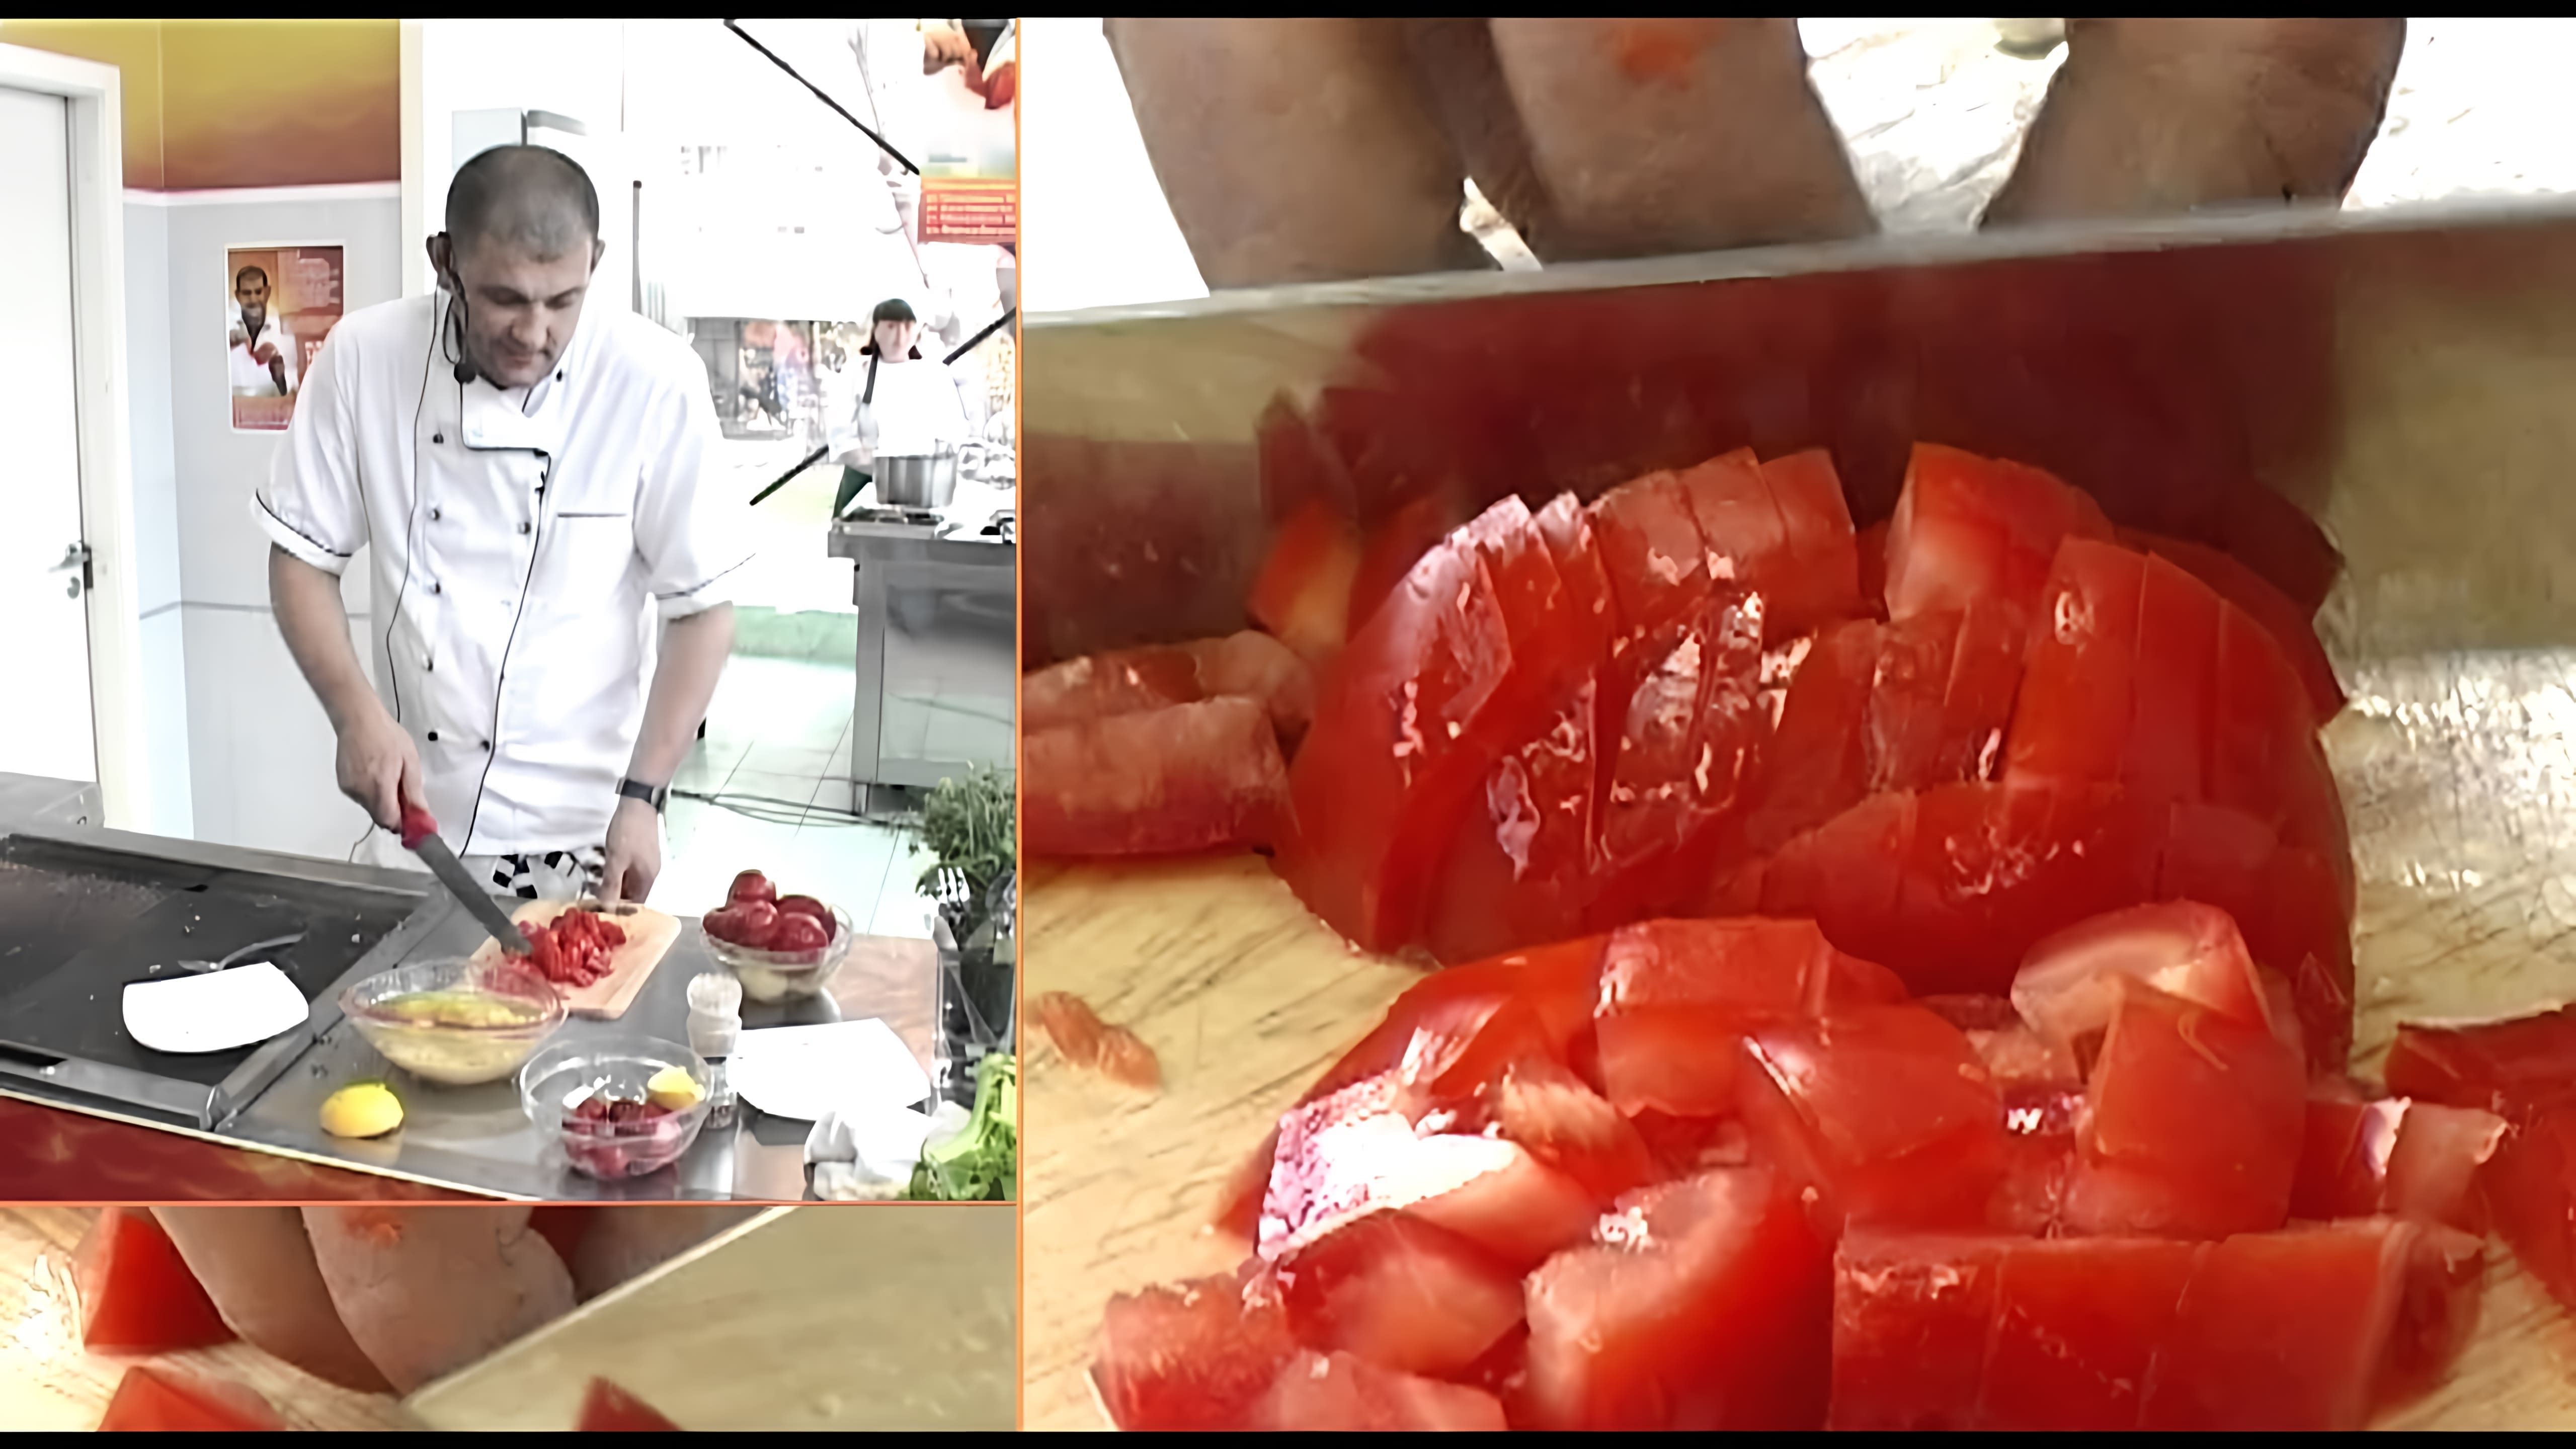 Серж Маркович - Рыбный суп - это видео-ролик, в котором известный шеф-повар Серж Маркович делится своим рецептом приготовления рыбного супа